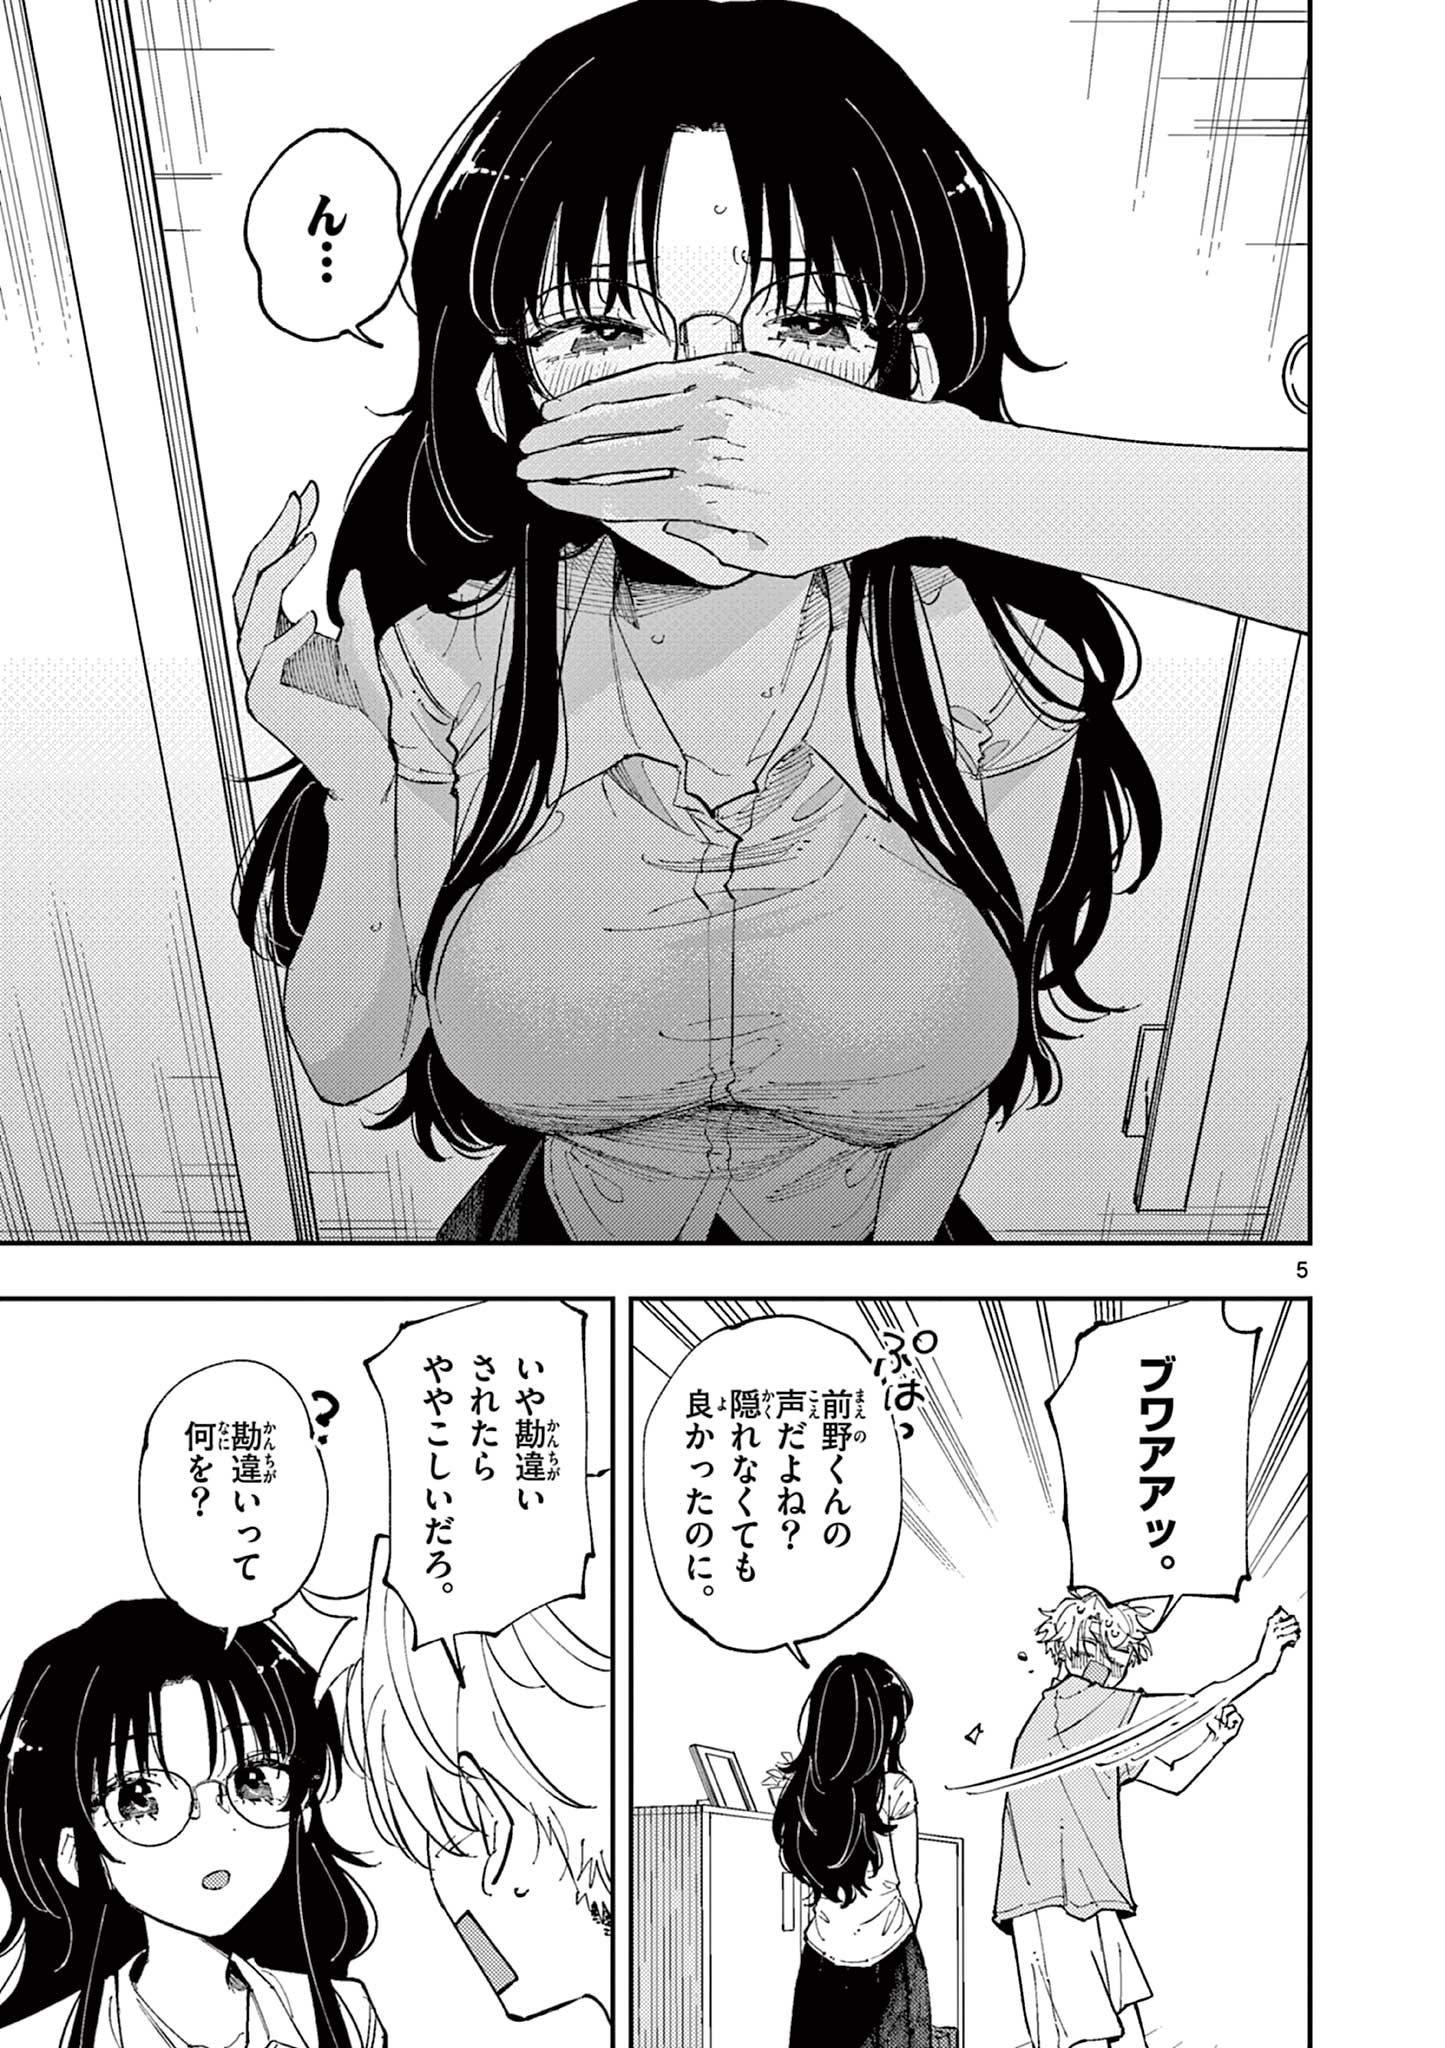 Tonari no Seki no Yatsu ga Eroi me de Mitekuru Hanashi - Chapter 11 - Page 5